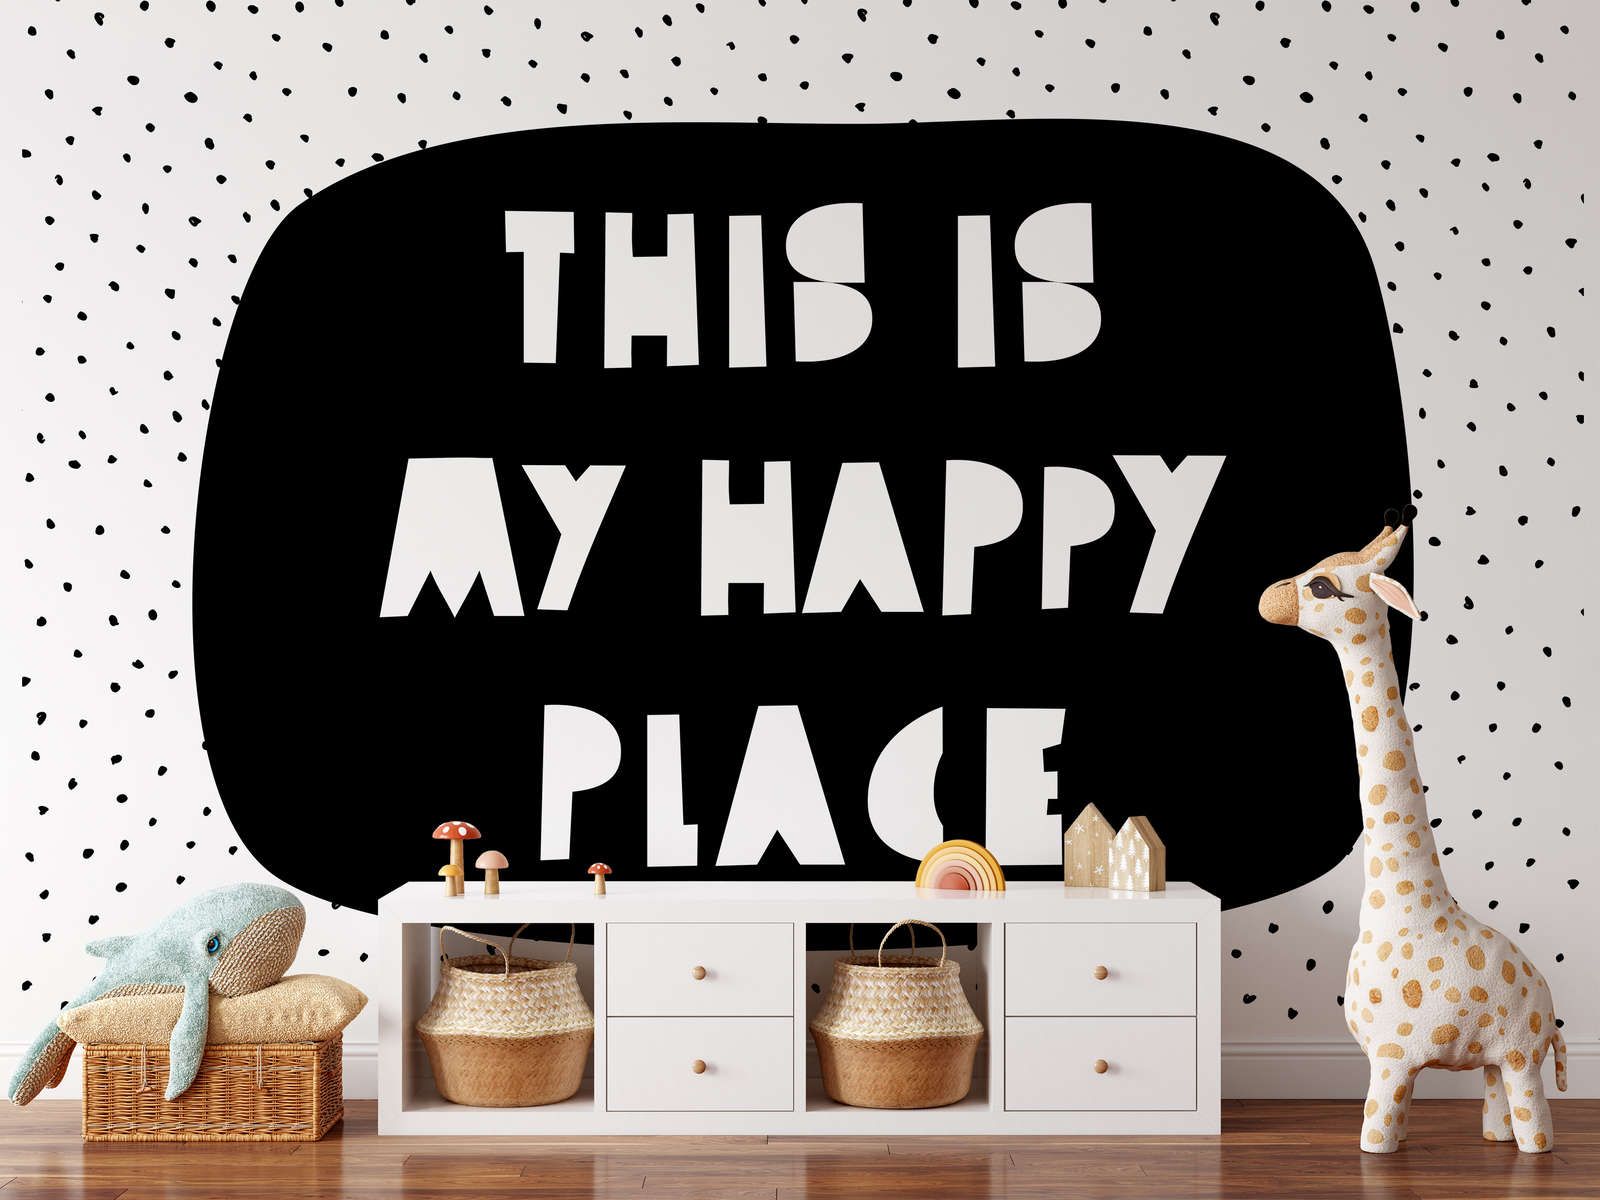             Digital behang voor kinderkamer met opschrift "This is my happy place" - Glad & mat vlies
        